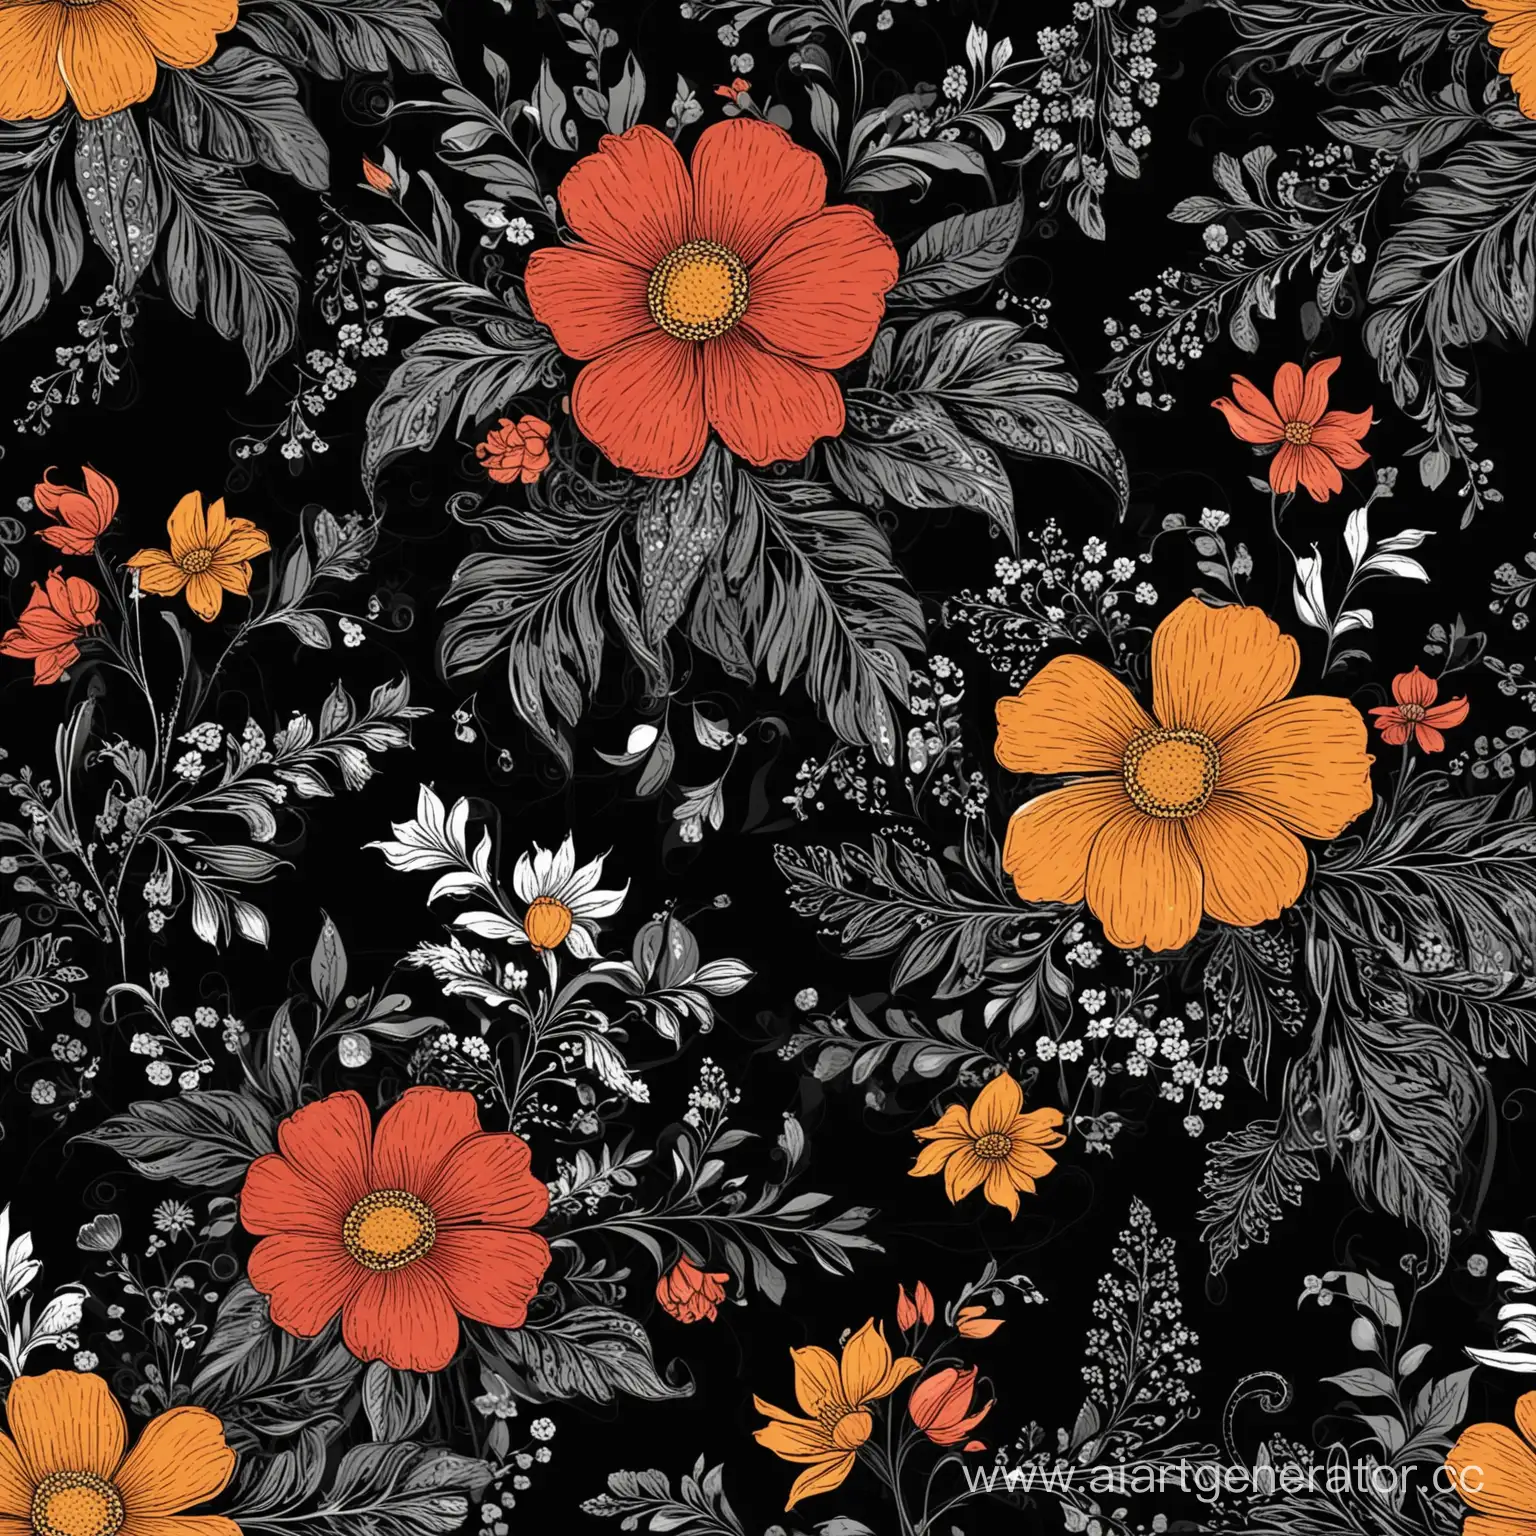 Vibrant-Floral-Patterns-on-Sleek-Black-Canvas